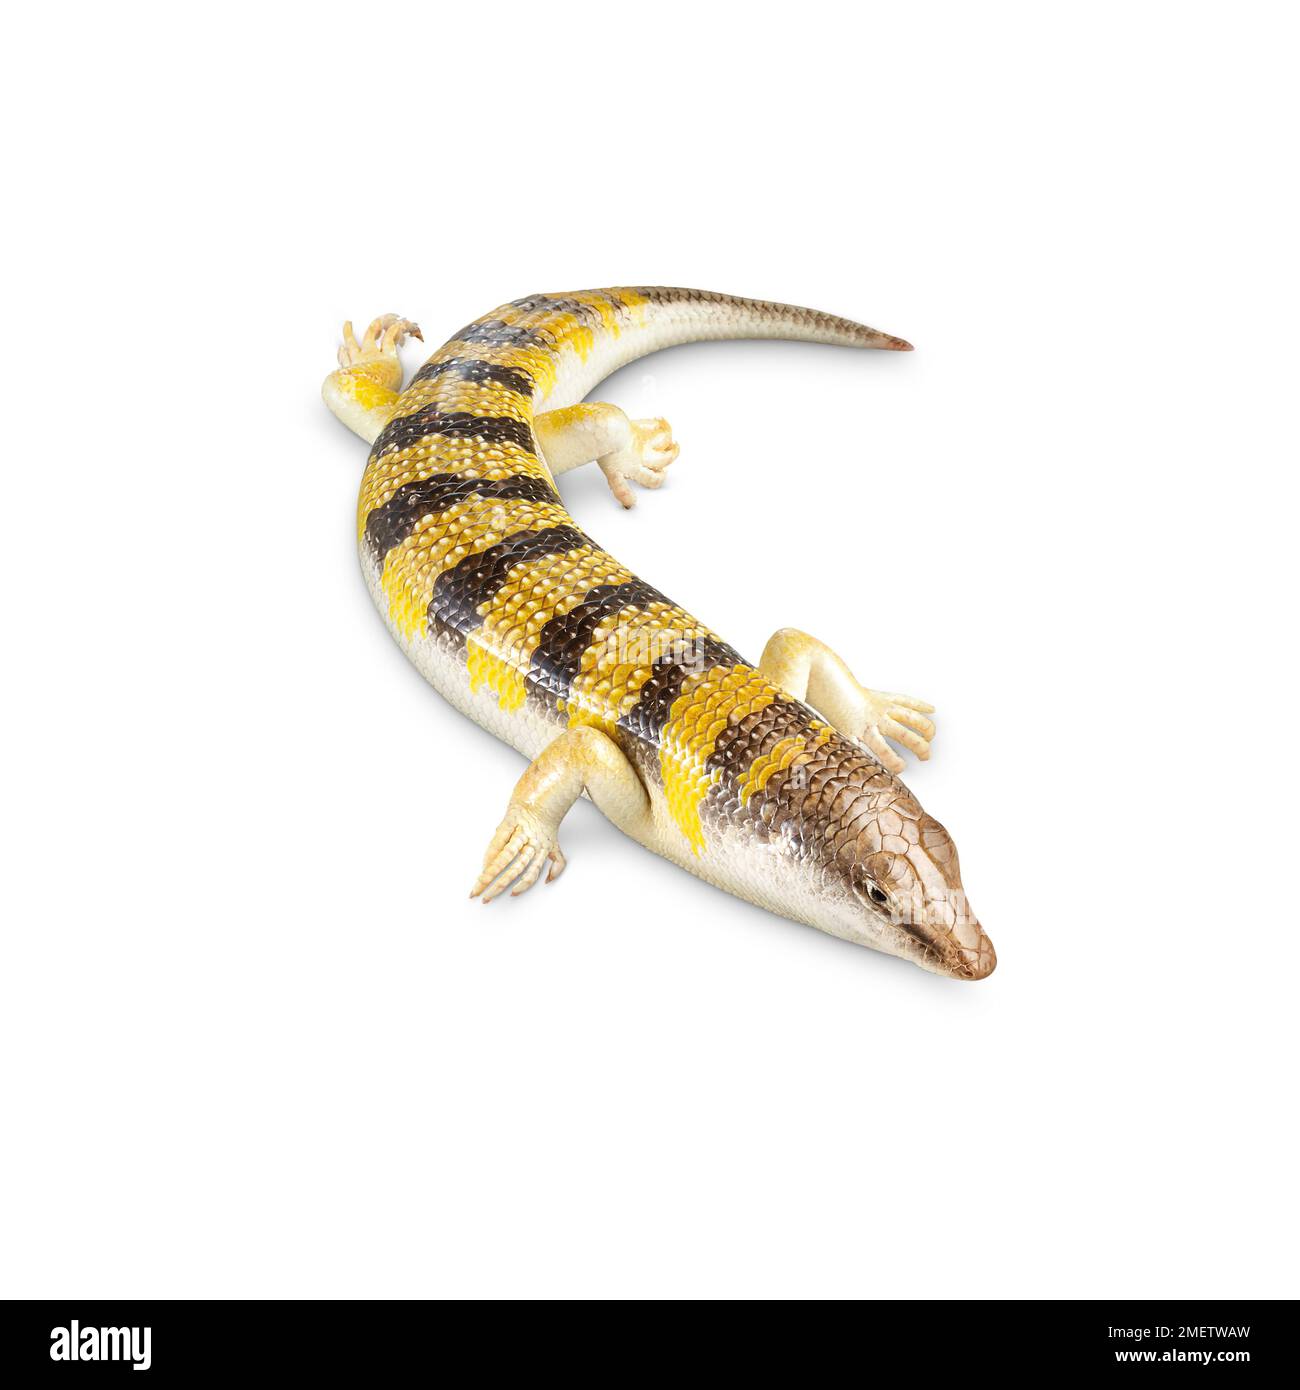 Sand fish (Scincus scincus) Stock Photo